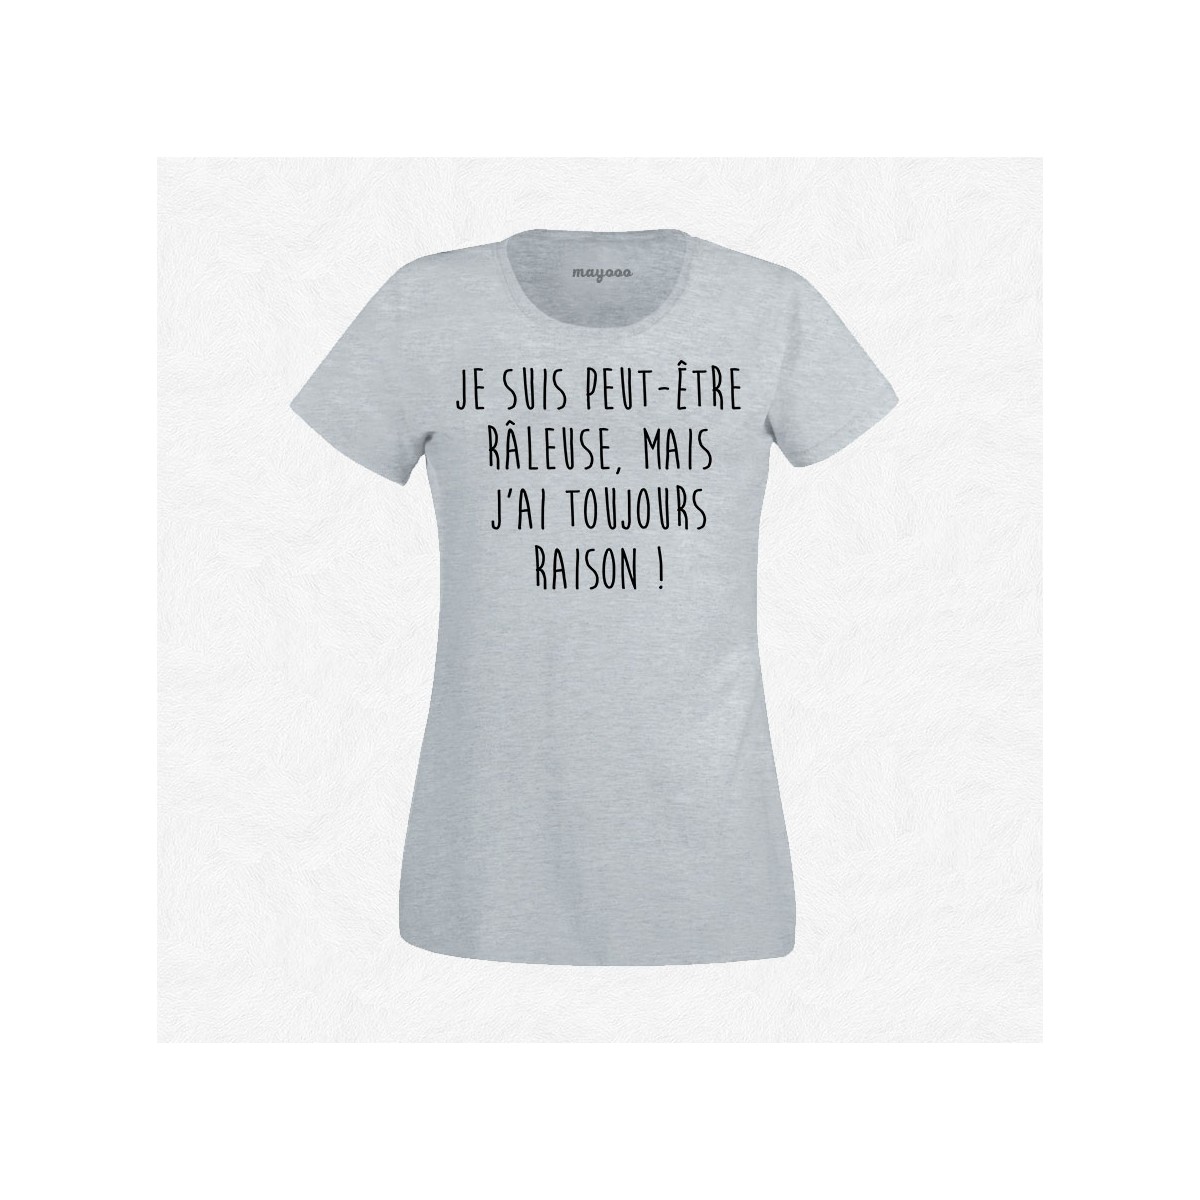 T-shirt Râleuse mais j'ai toujours raison